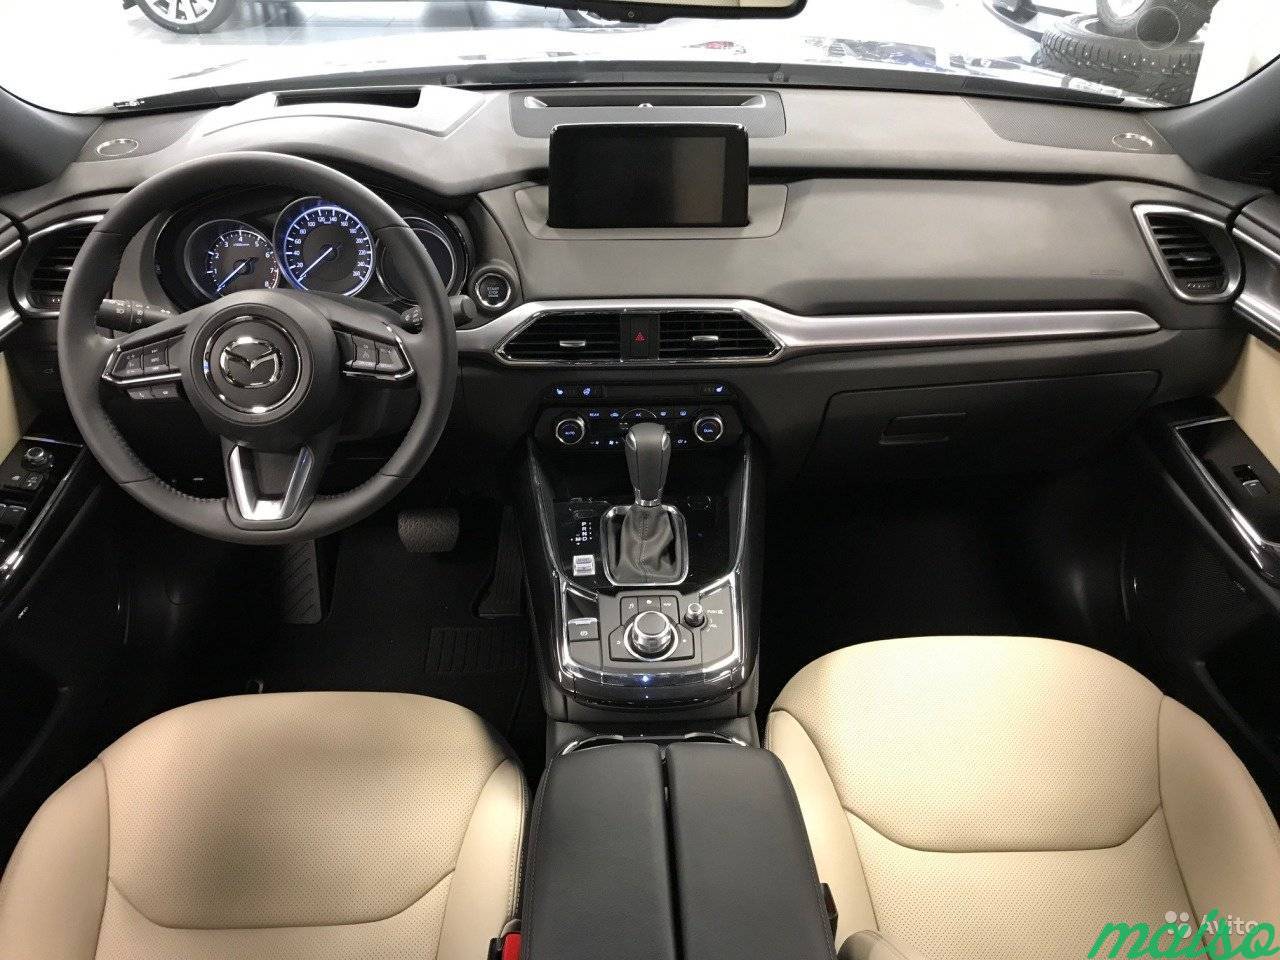 Mazda CX-9 2.5 AT, 2018, внедорожник в Санкт-Петербурге. Фото 5